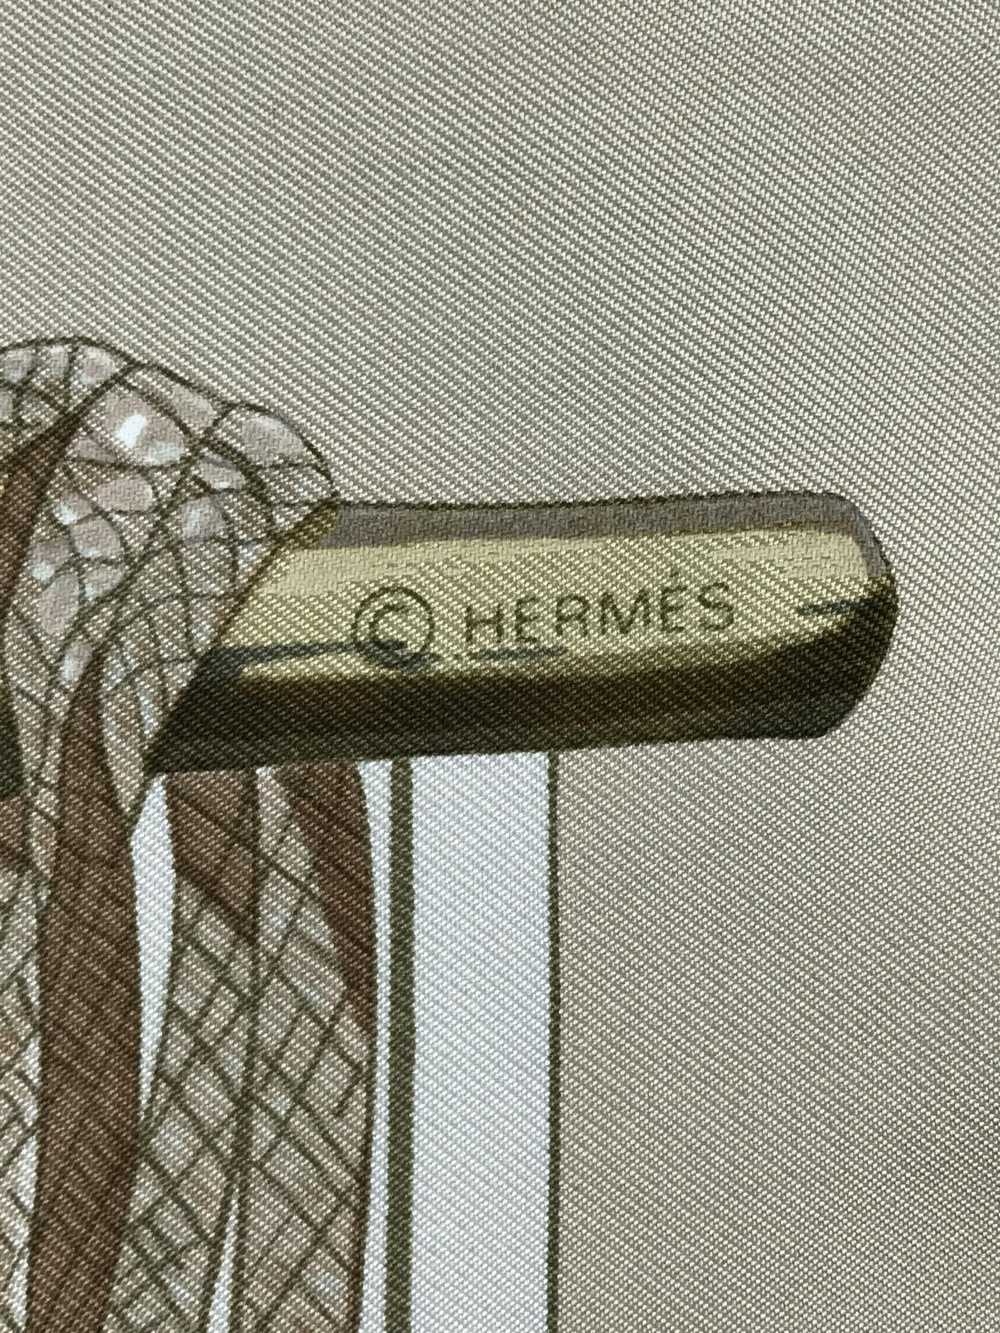 Hermes × Luxury × Vintage Vintage Hermes Silk Sca… - image 7